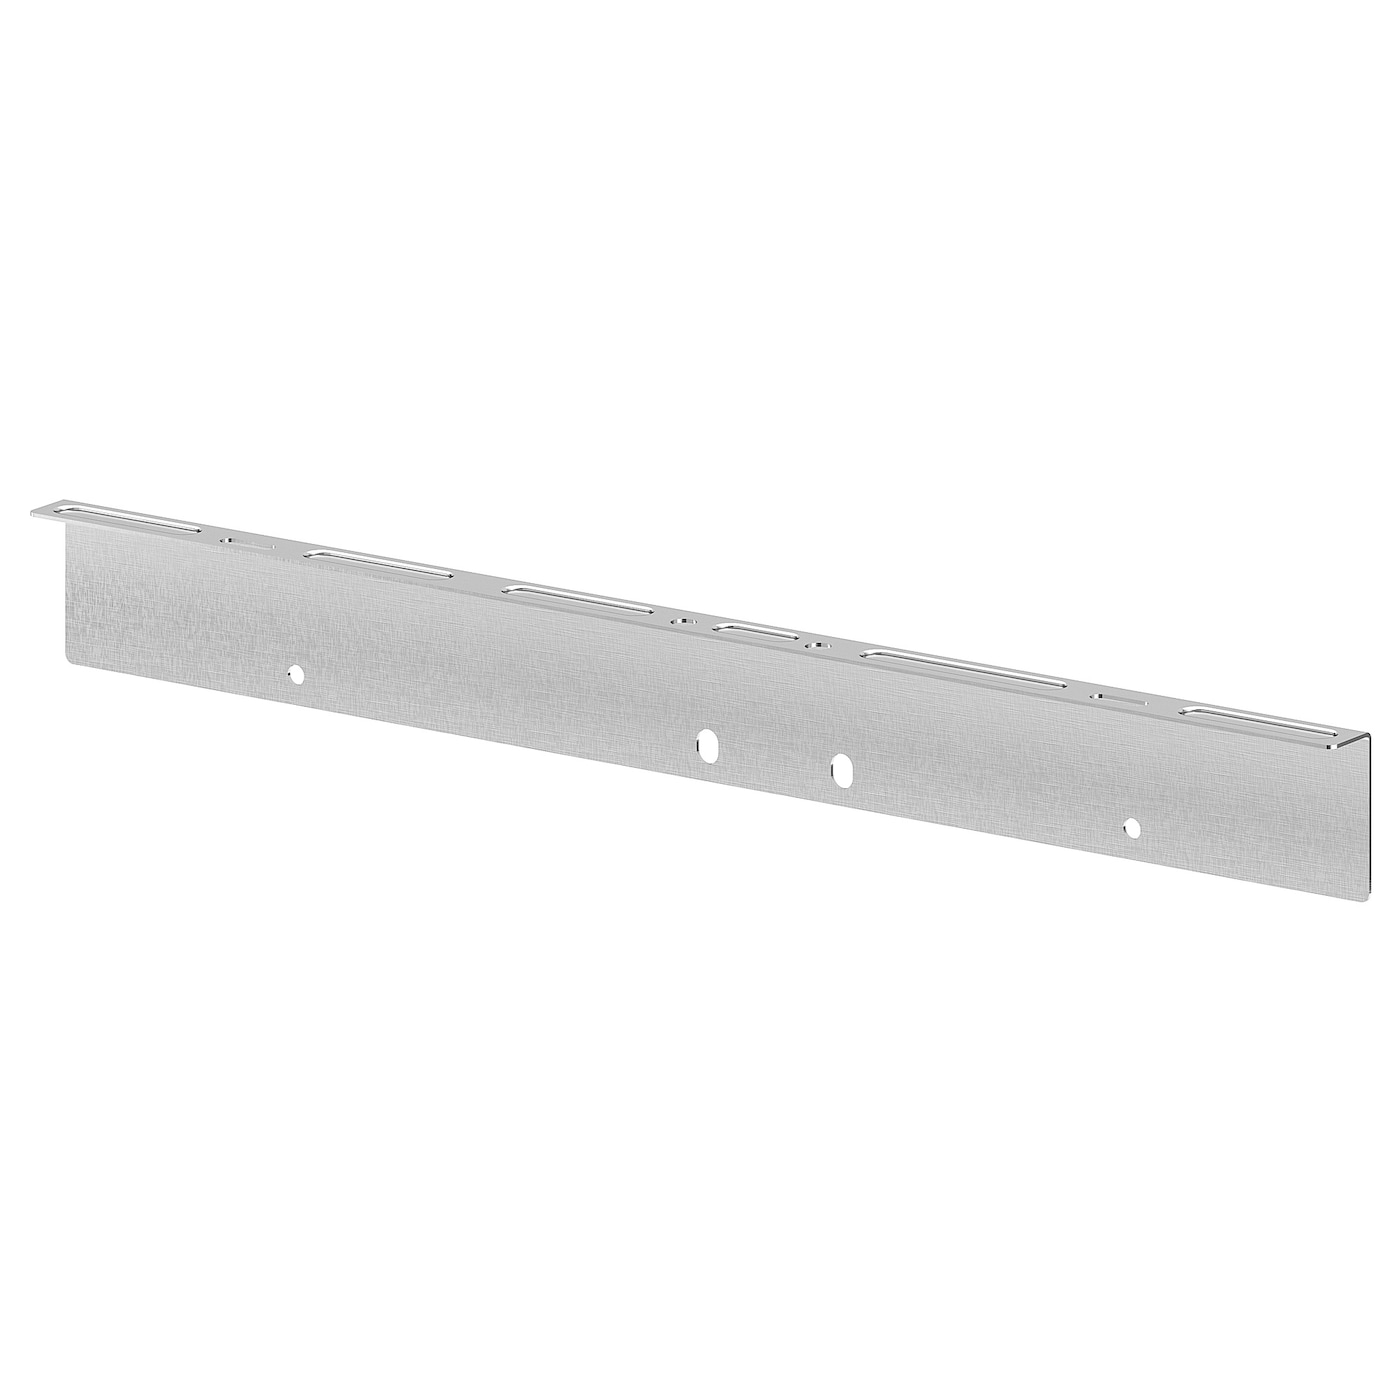 Опора столешницы - FIXA IKEA/ ФИКСА ИКЕА,  39х4х1,6 см, серебряный